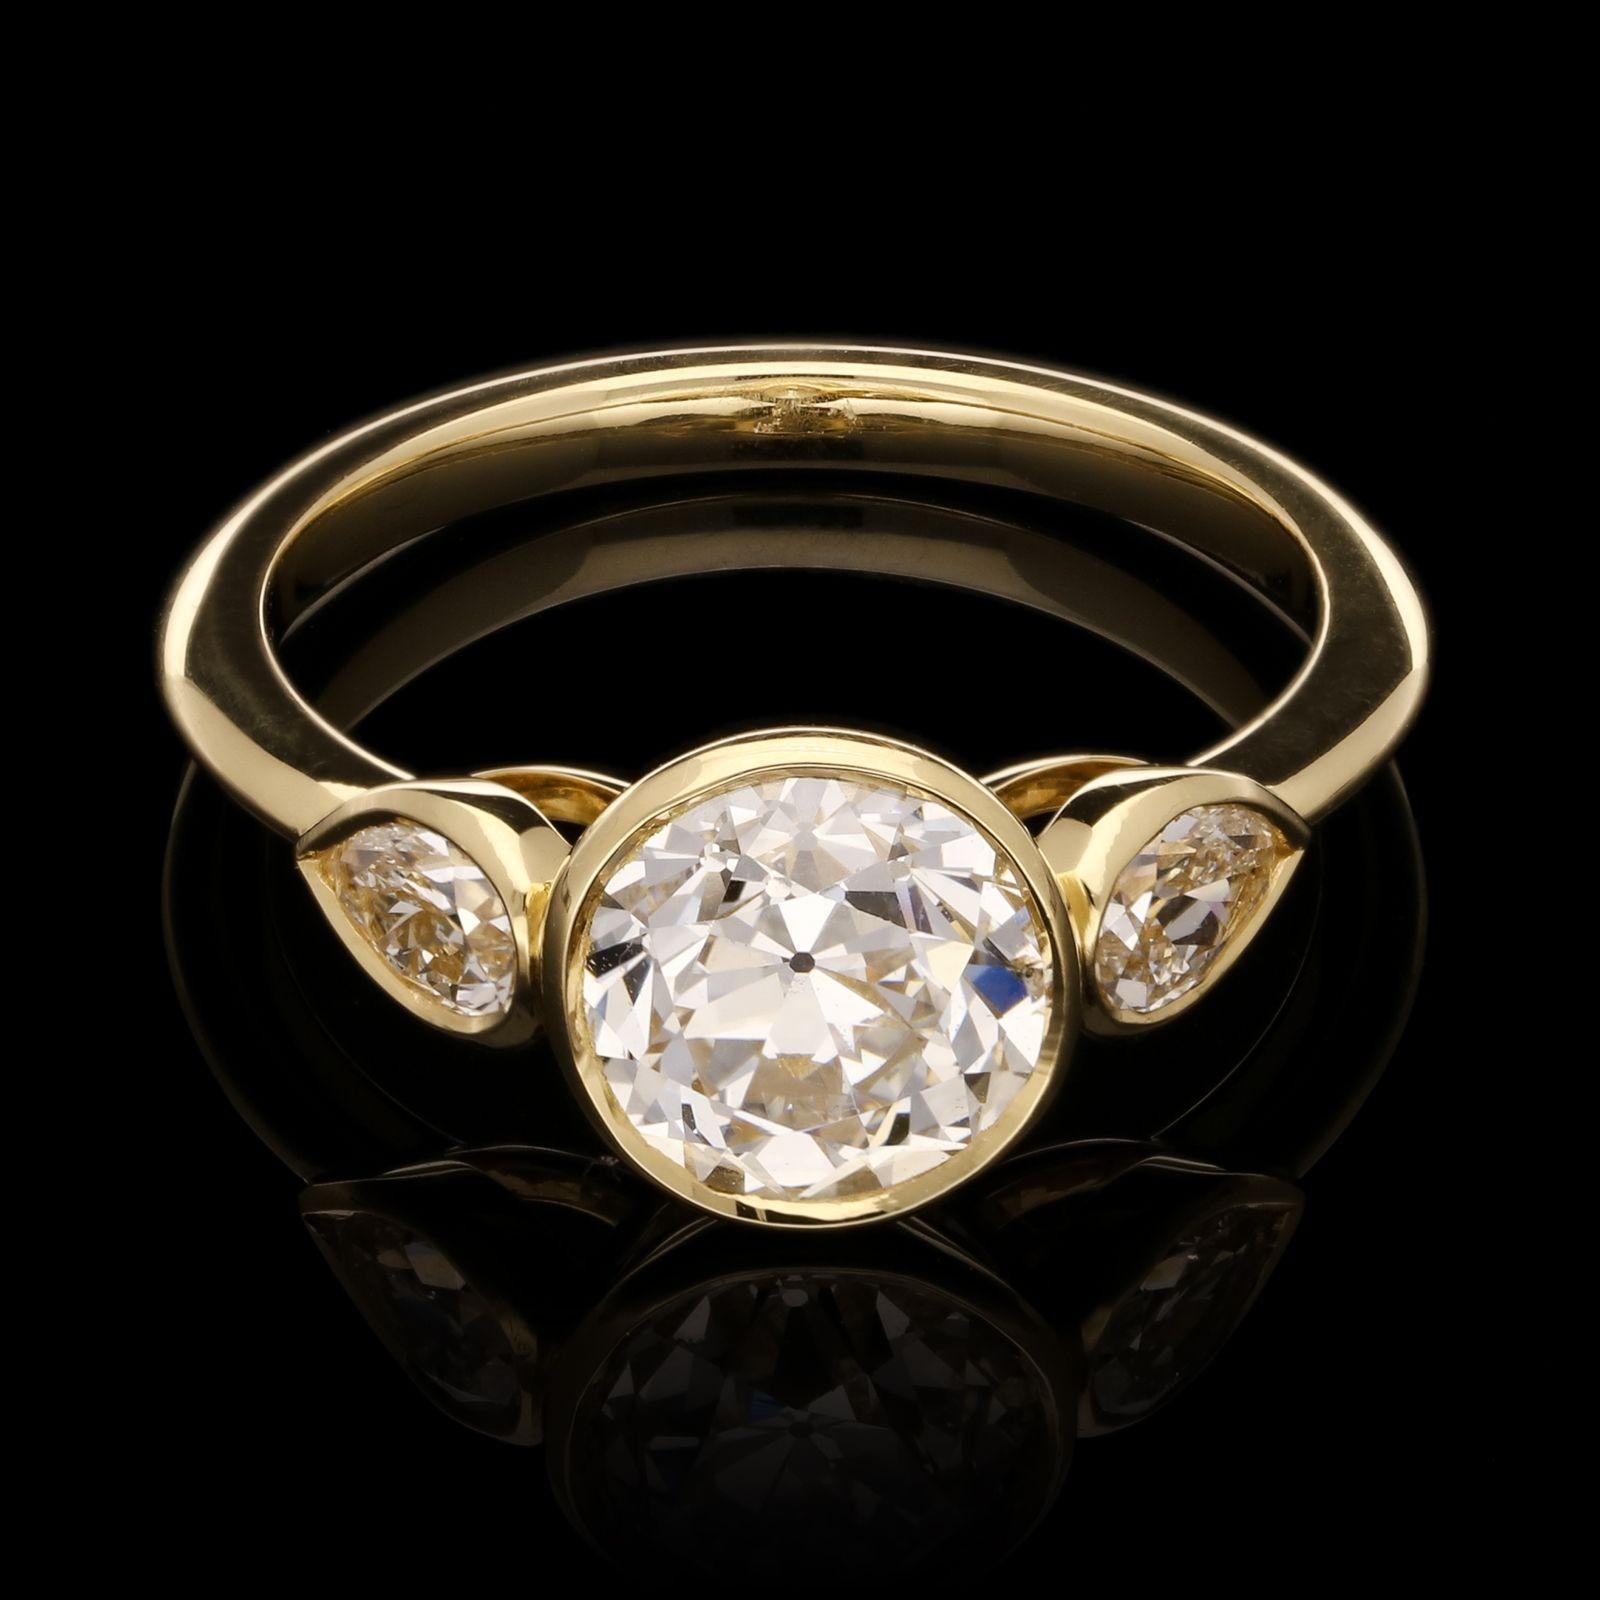 Ein eleganter Altschliff-Diamantring von Hancocks, in dessen Mitte ein schöner alter europäischer Brillant mit einem Gewicht von 1,77 ct. und einer Farbe von F und einer Reinheit von SI2 zwischen birnenförmigen Diamantschultern sitzt. Alles in einer